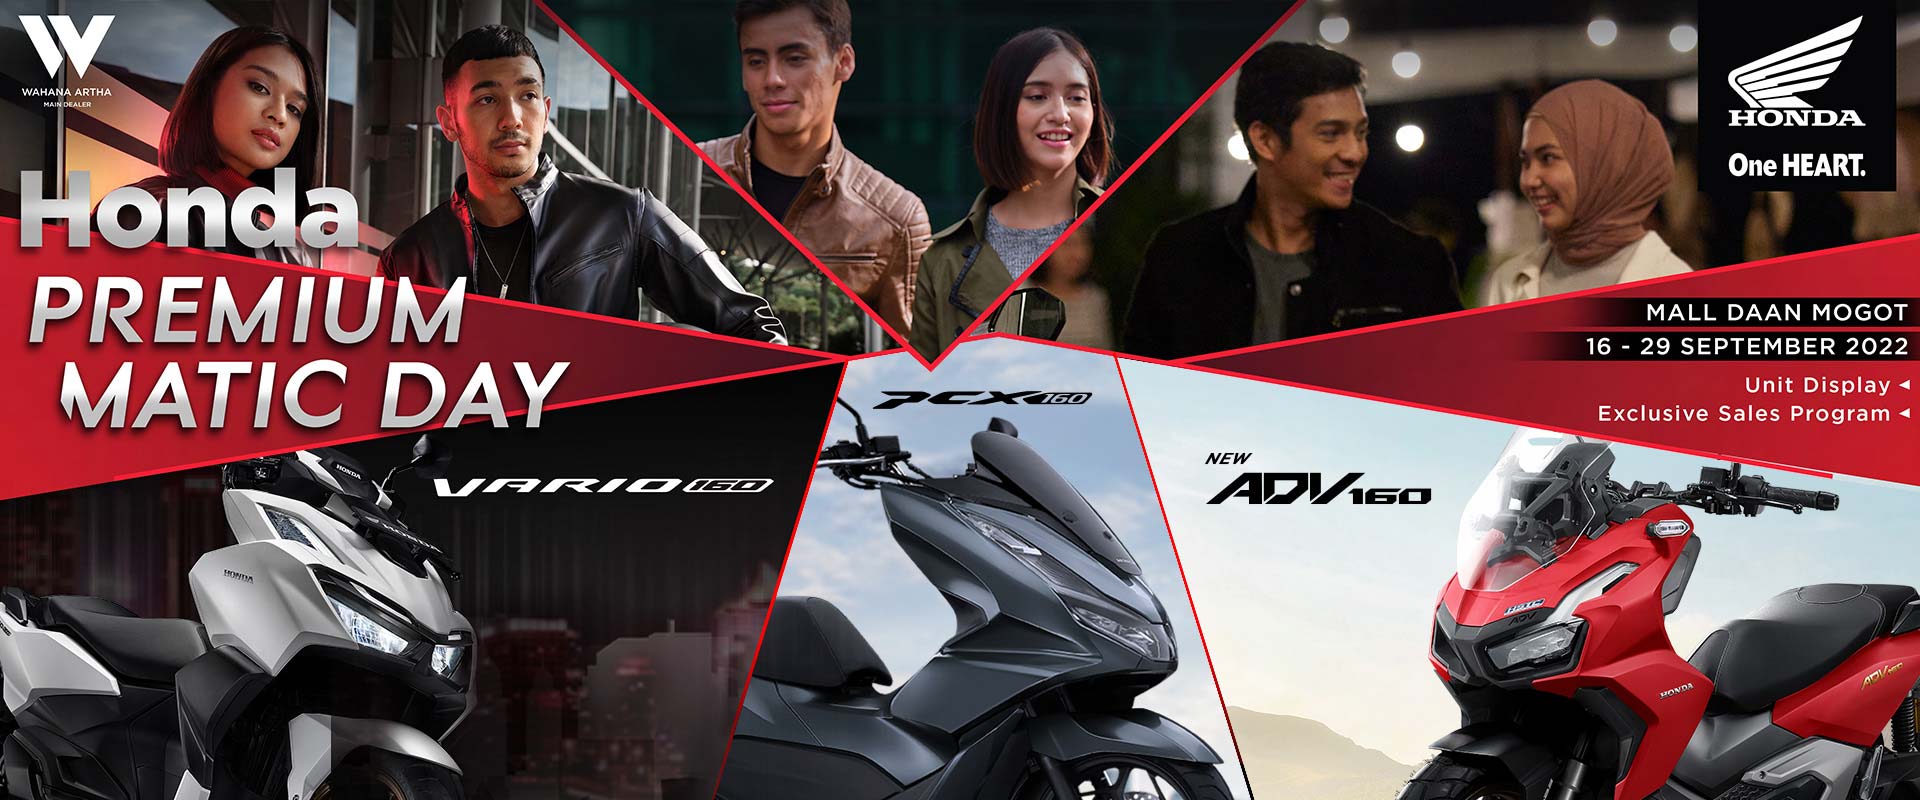 Honda Premium Matic Day 2022 - Mall Daan Mogot